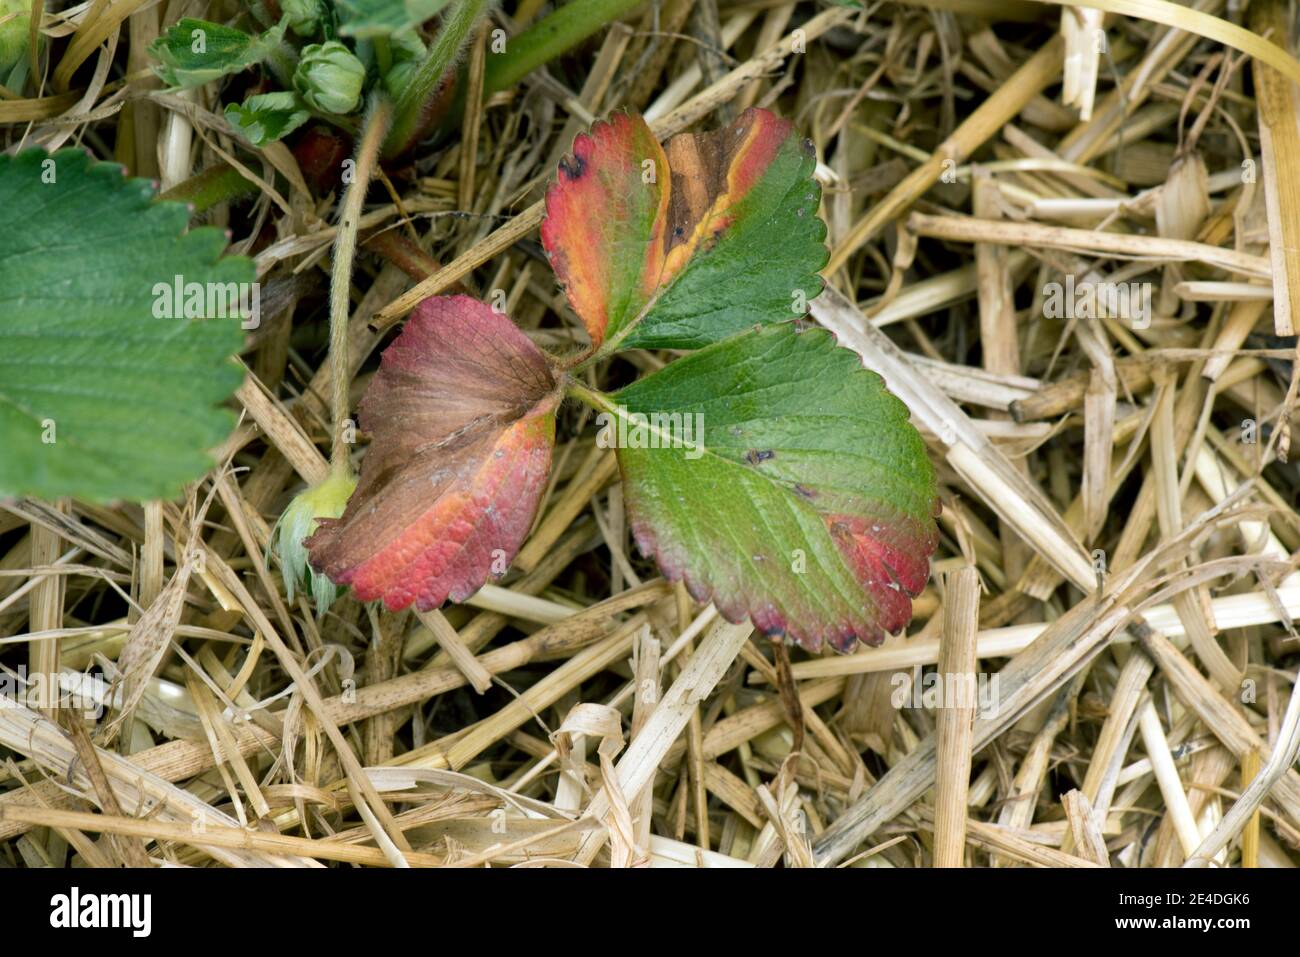 Blattfäule (Phomopsis obscurans) rote und graue nekrotische Läsionen an jungen Erdbeerblättern, Berkshire, Mai Stockfoto